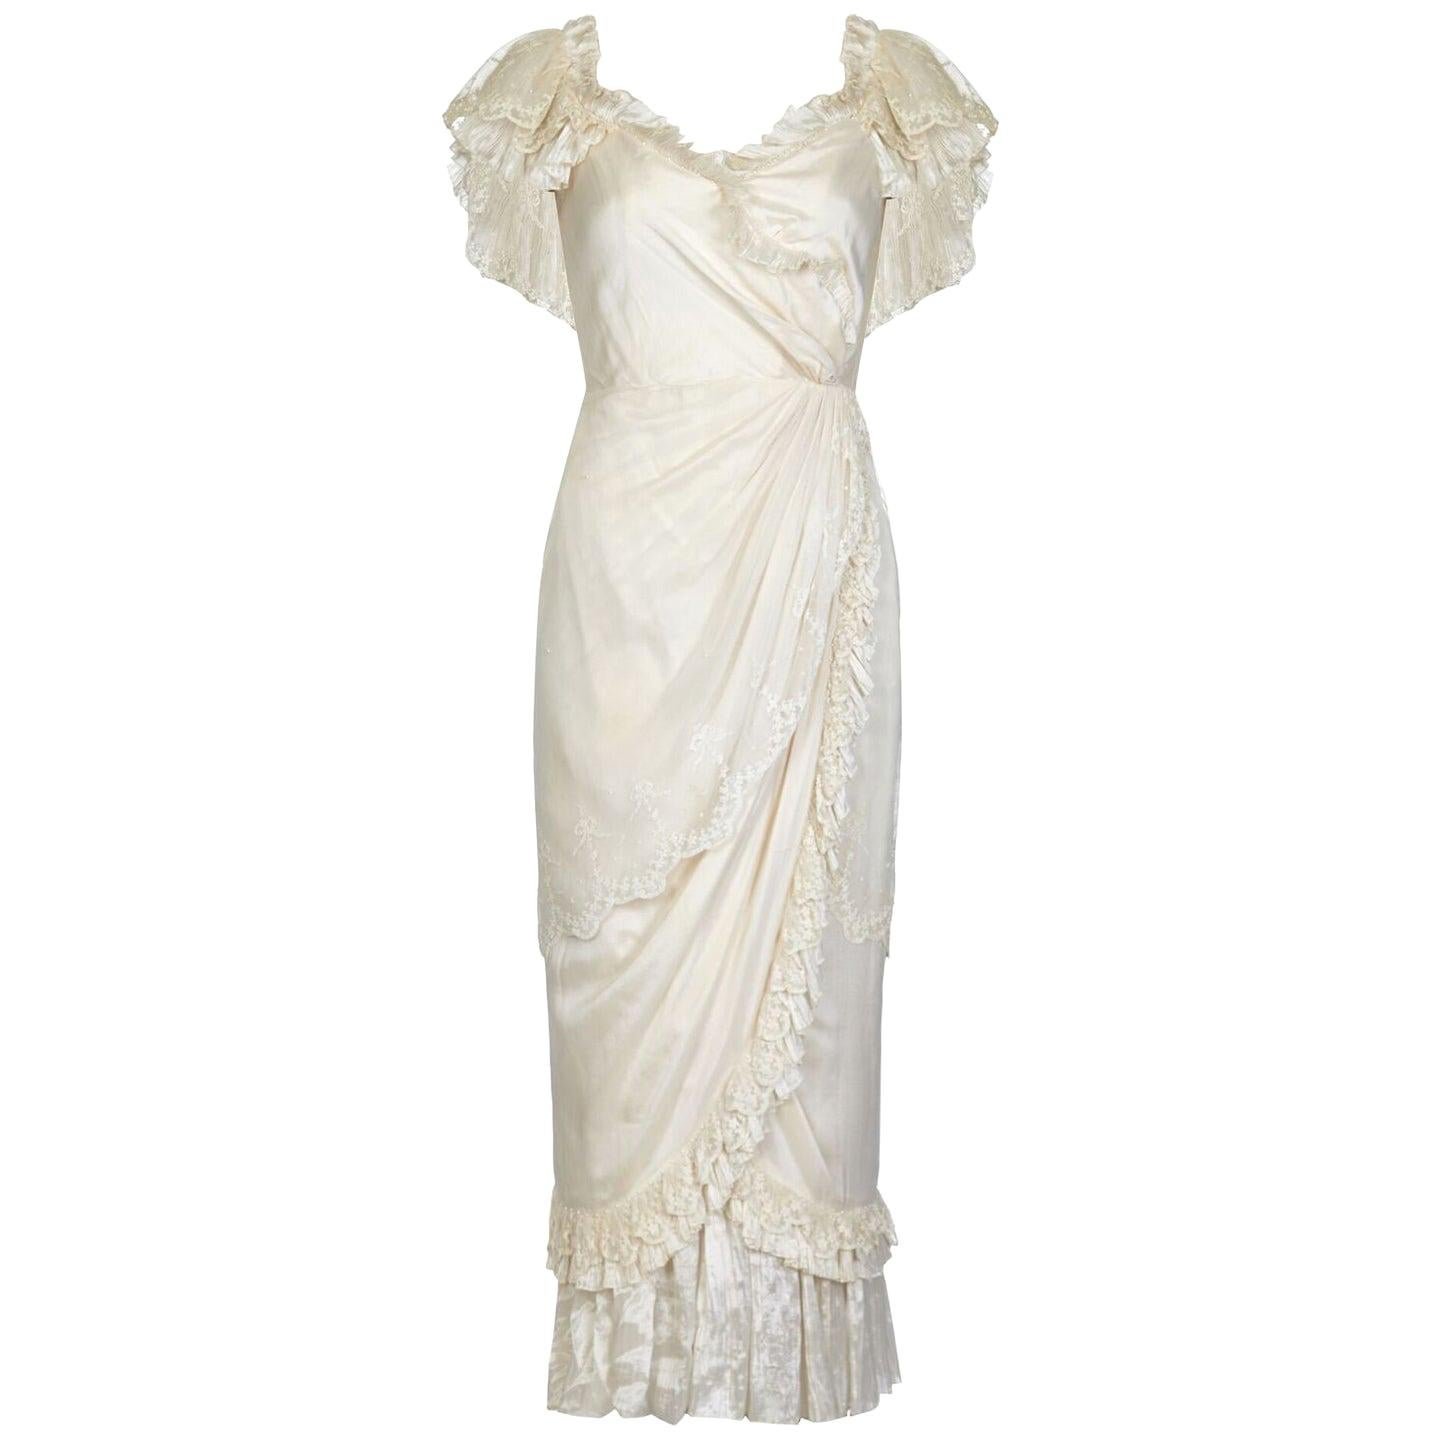 Dieses exquisite Andrea Wilkin 1970er Fantasy-Brautkleid in zartem Elfenbein strahlt Weiblichkeit aus und ist in wunderbarem Zustand. Lagen aus Seidenstoff sind wunderschön arrangiert, um den klassisch-romantischen Look zu kreieren, der an die